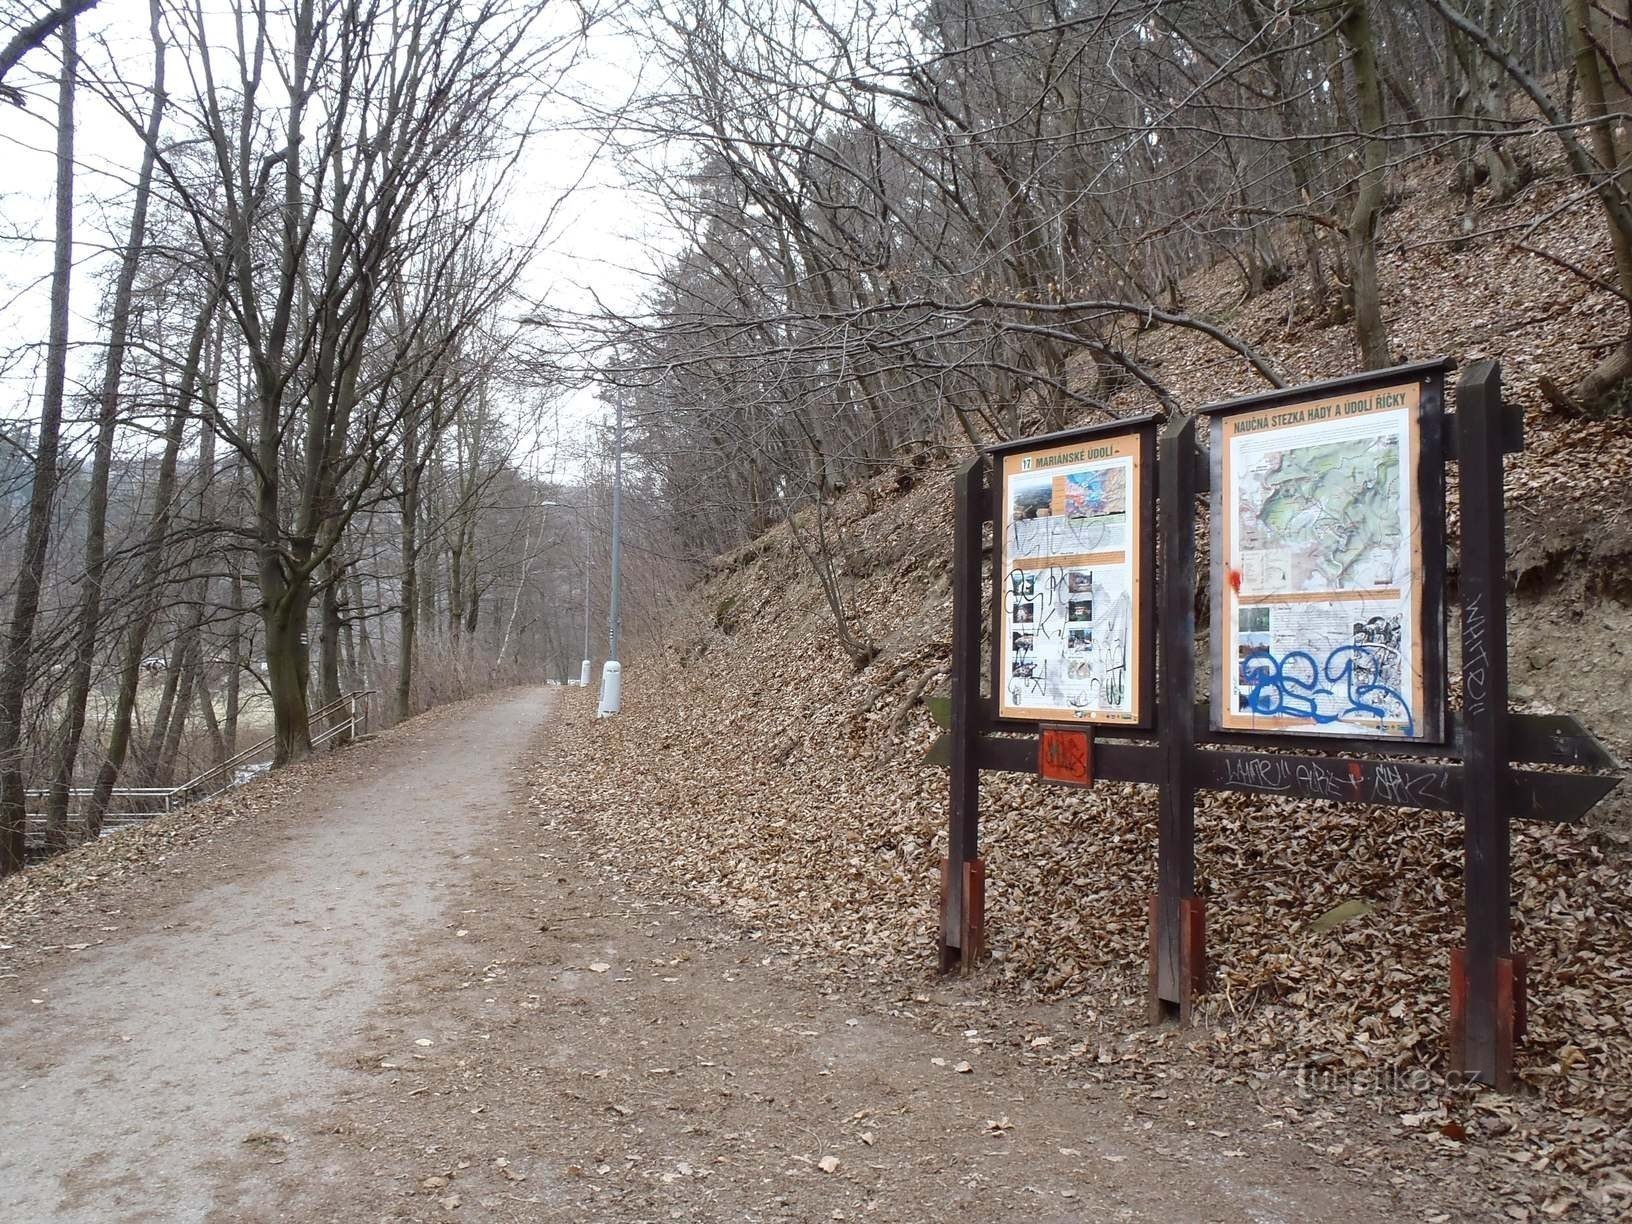 Jena from the paths to the Mariánské údolí (blue and red sign) - February 6.2.2012, XNUMX